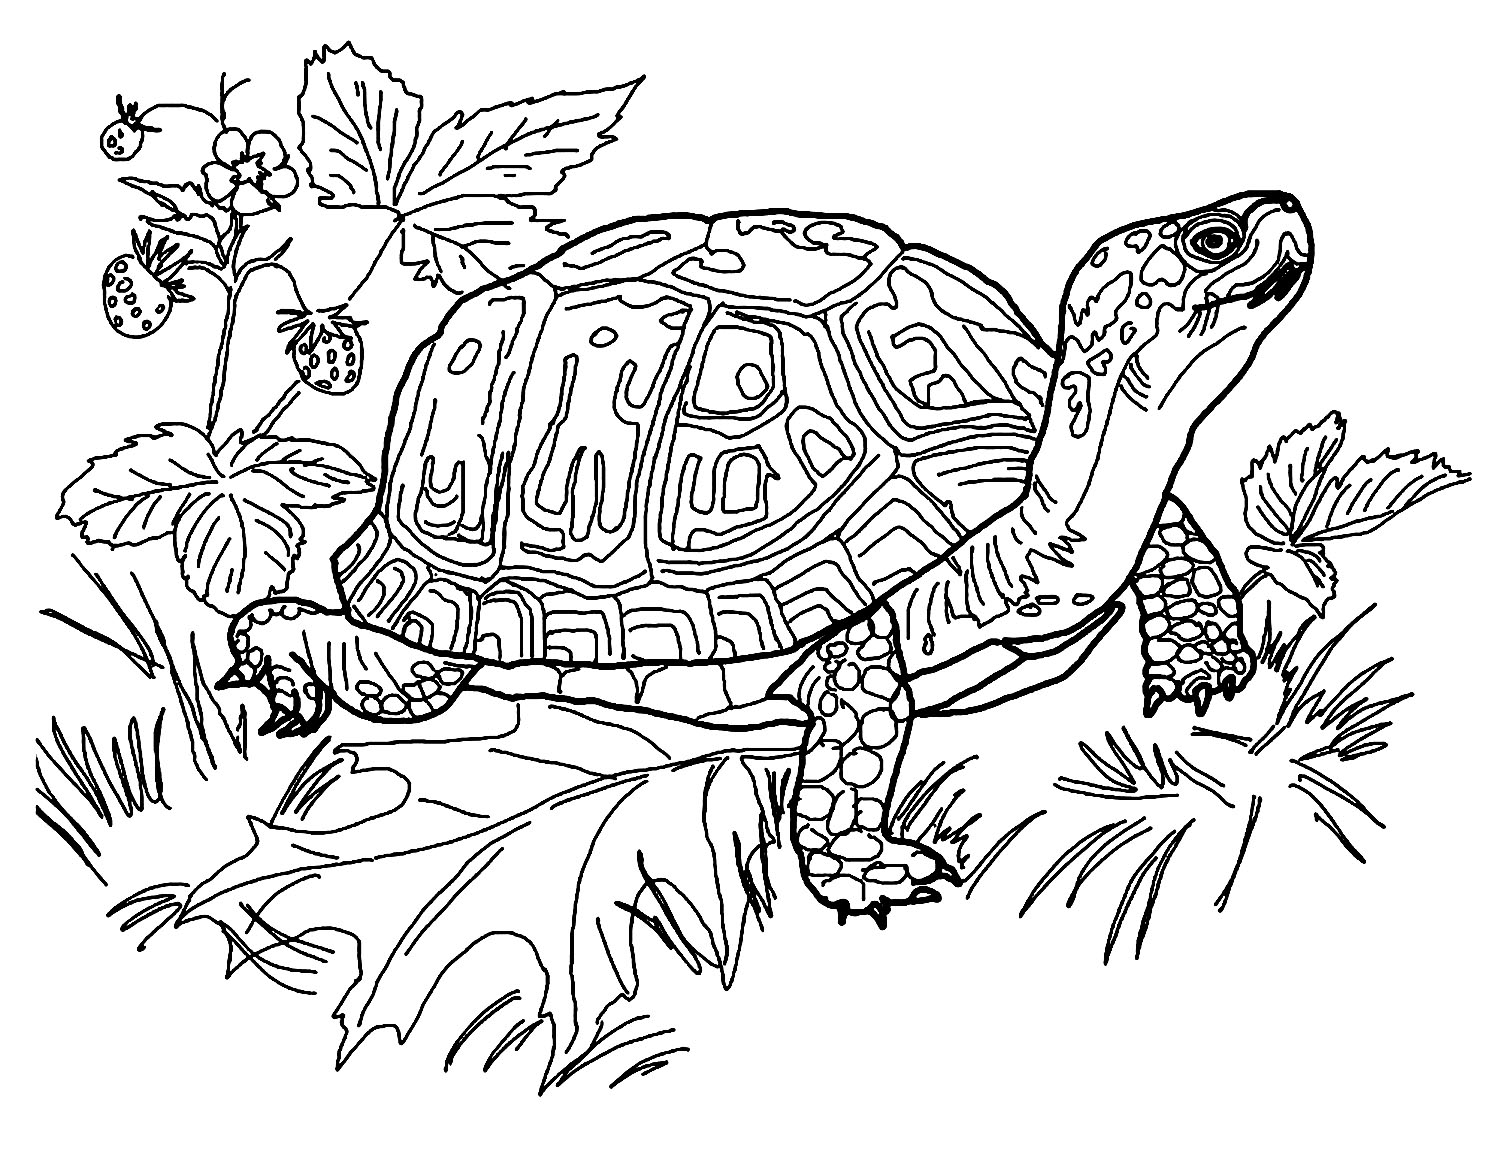 Prepare os seus lápis e marcadores para colorir neste livro de colorir tartarugas